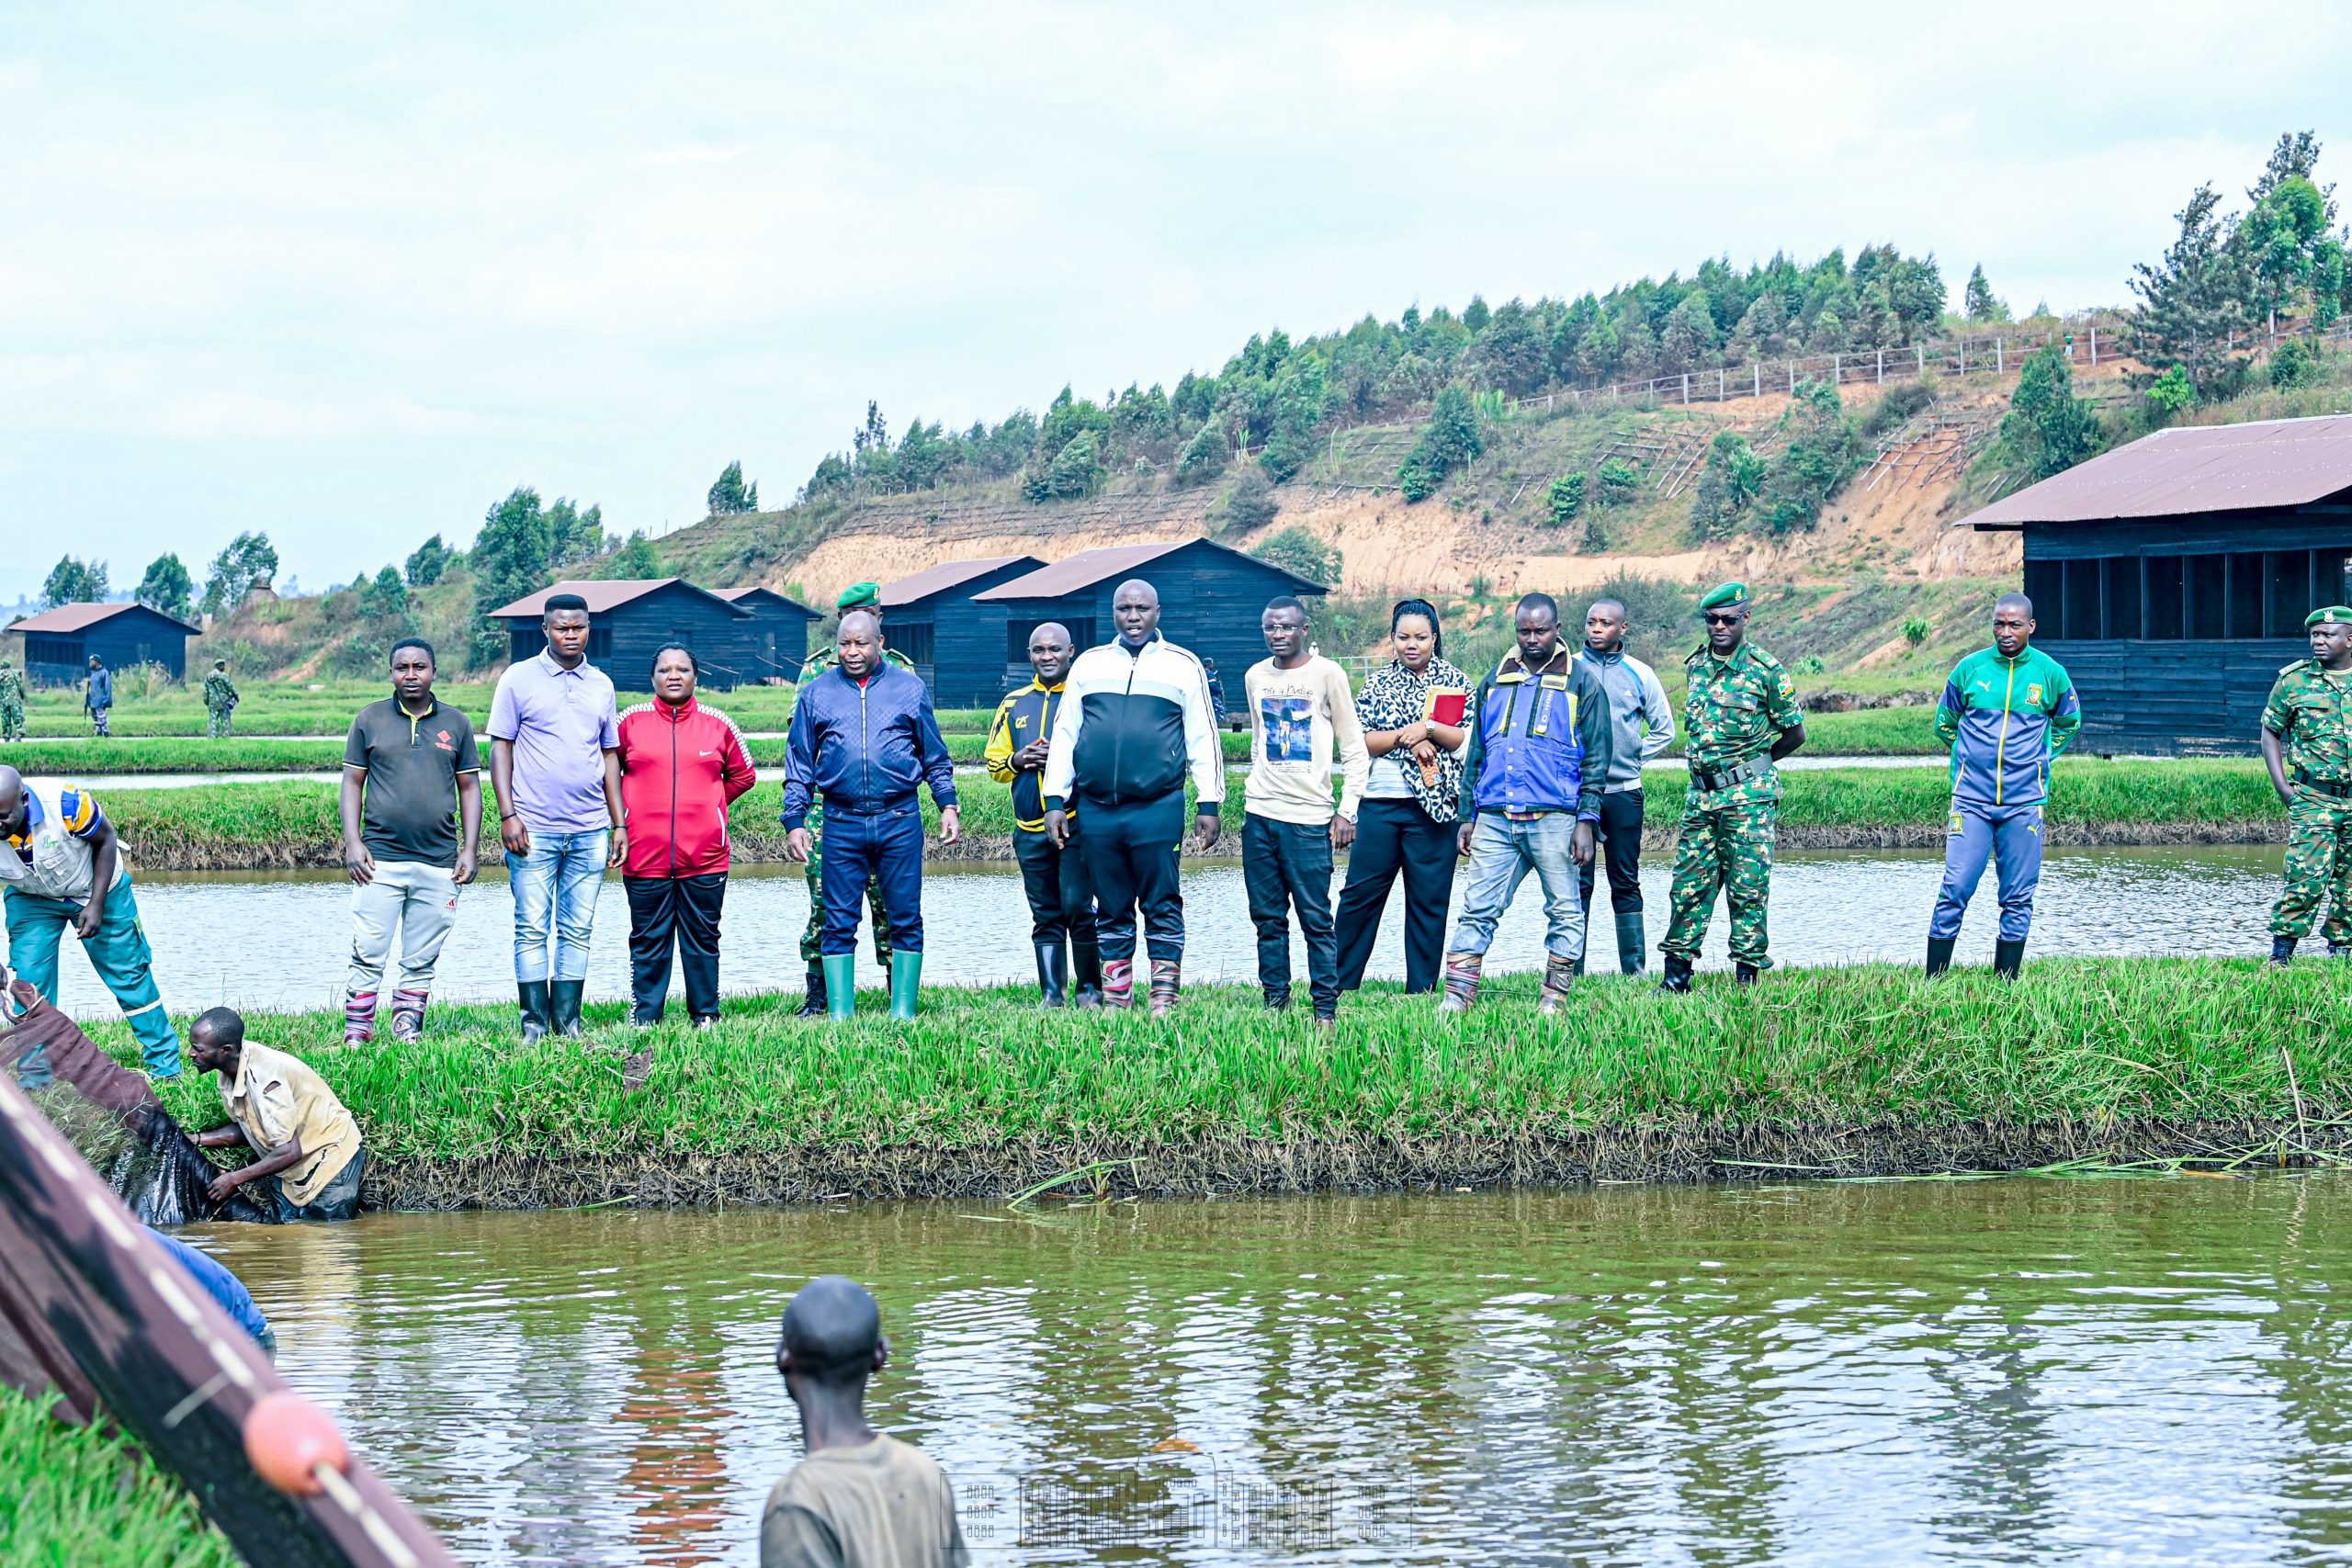 Le Président Ndayishimiye sert de modèle dans la pisciculture